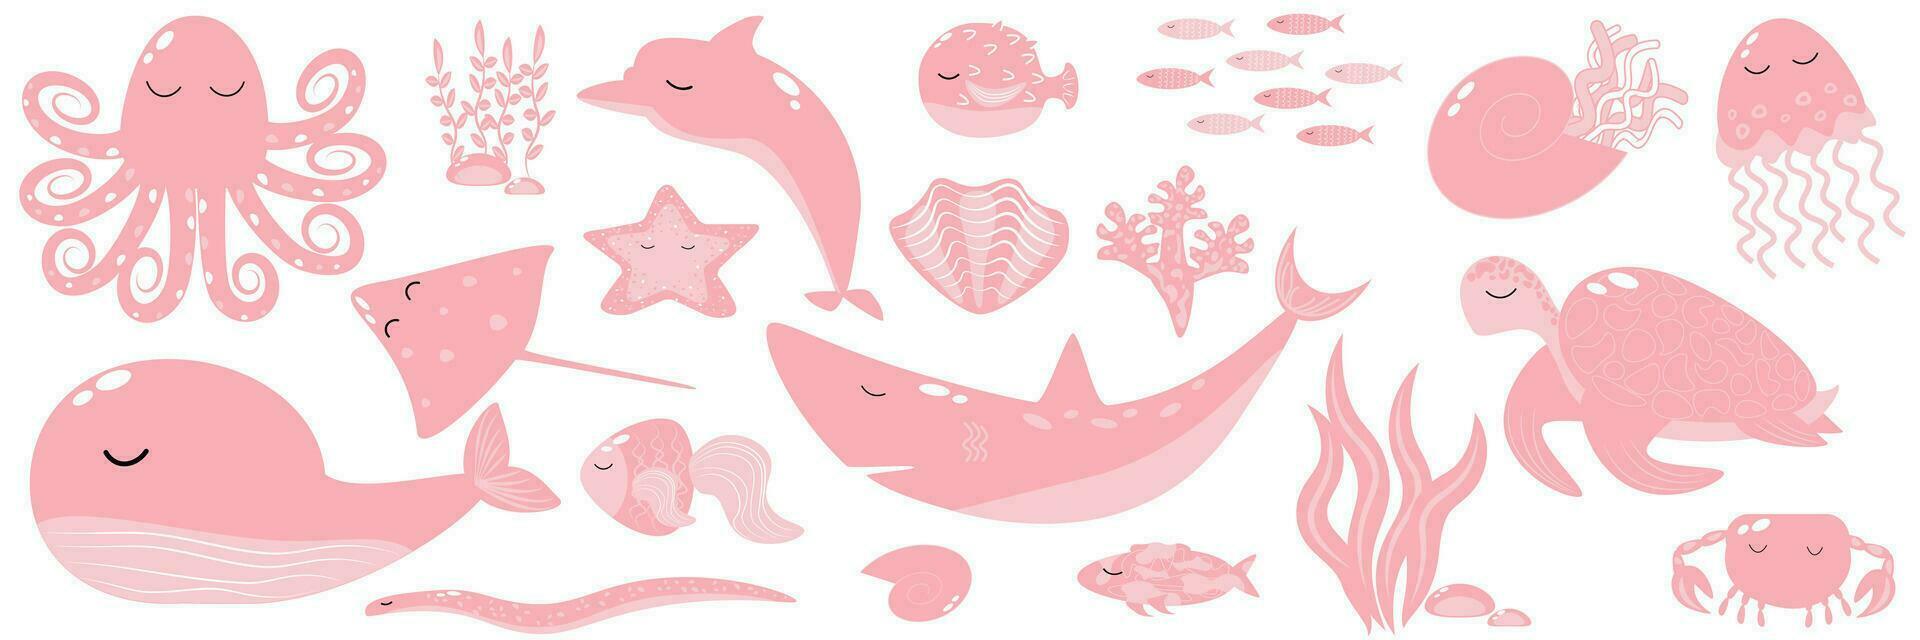 Vektor Illustration Rosa Trend einstellen Marine Tiere Wal Hai Delfin Tintenfisch Stachelrochen Krabbe Banner Vorlage eps10